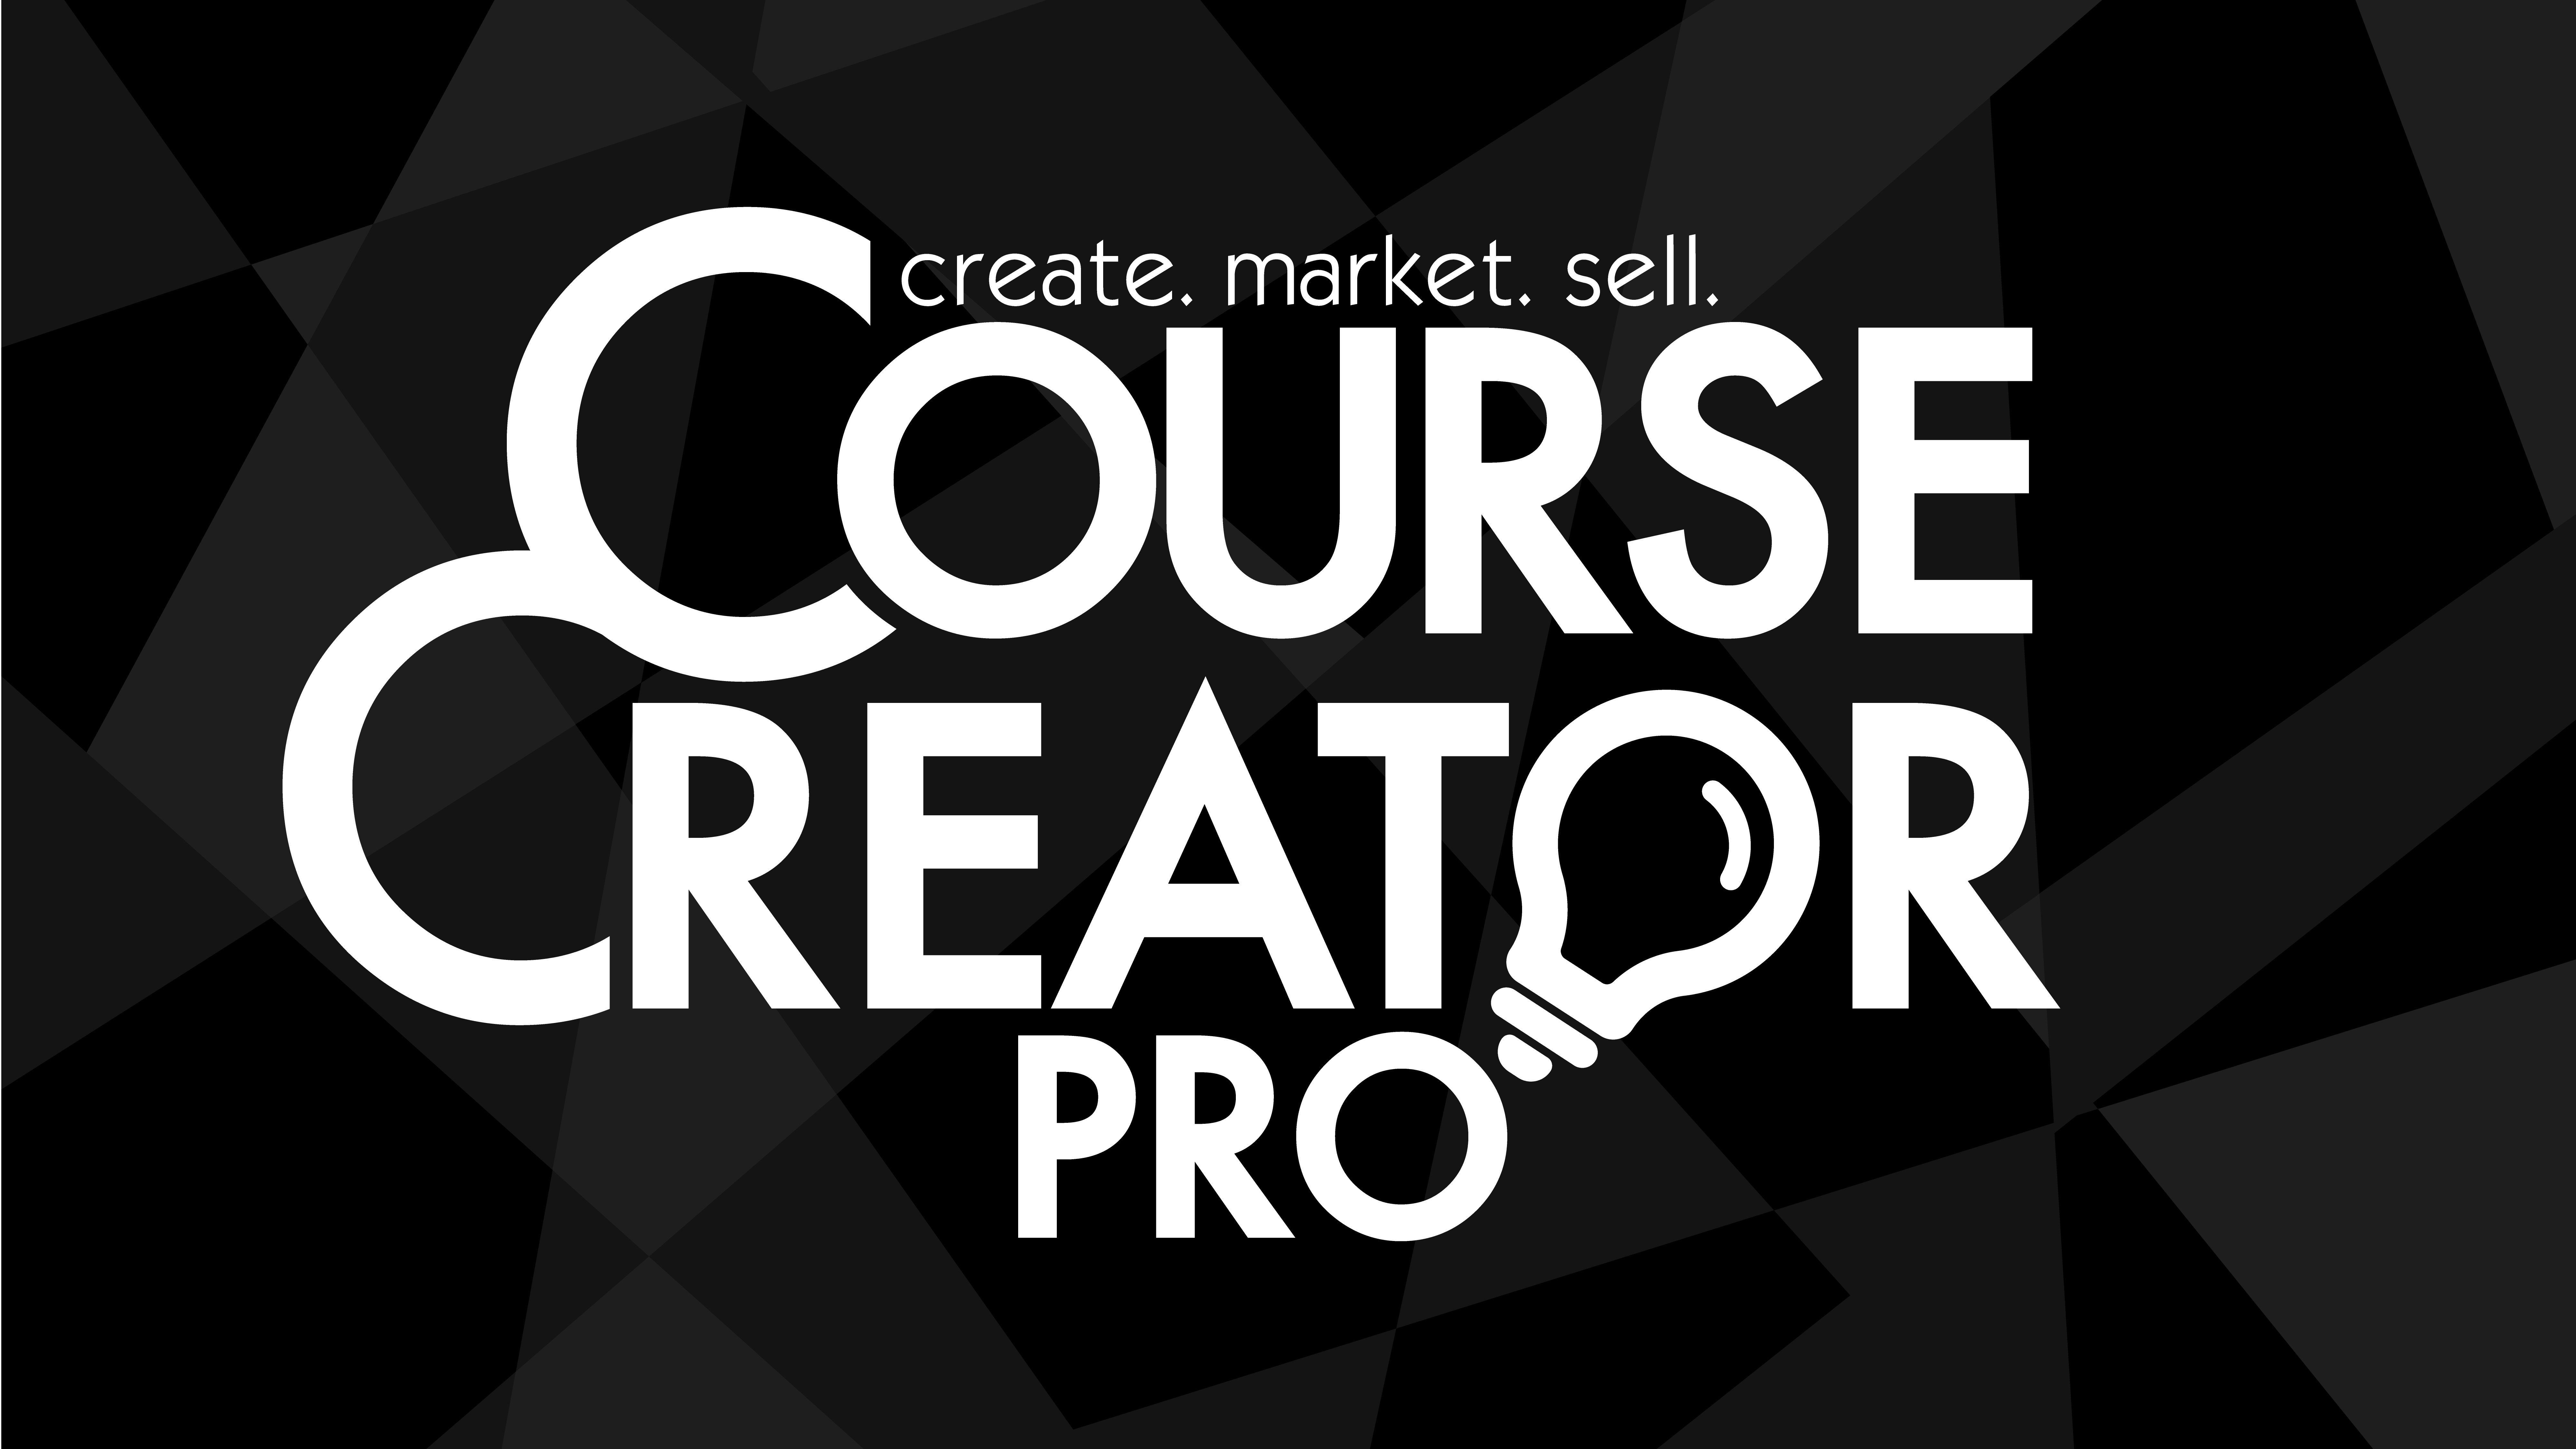 Pro creator. Create course. Space creator Pro.